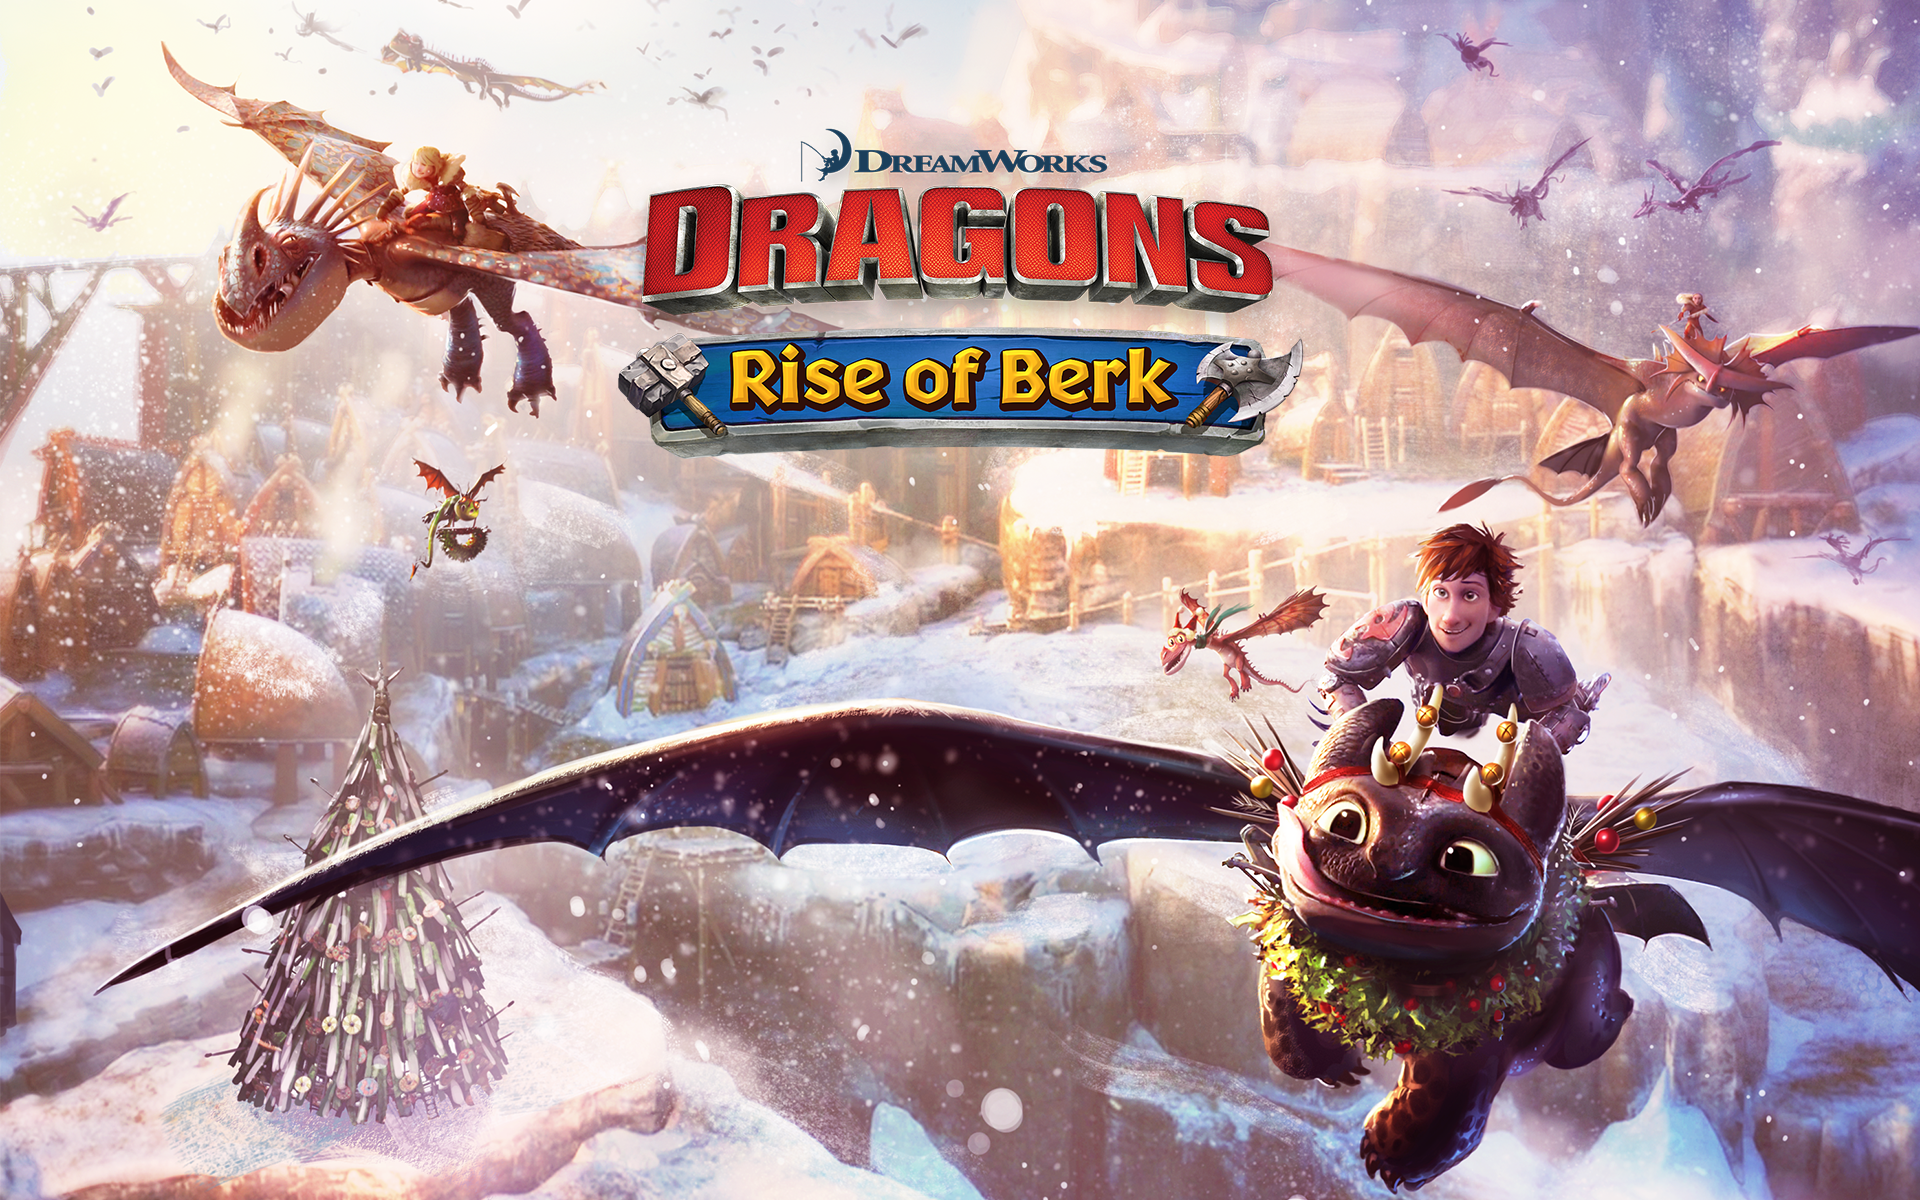 Игры наездники. Игра Rise of Berk драконы. Райс оф Берк. Dragons всадники Олуха игра. Драгонс Райс оф Берк.